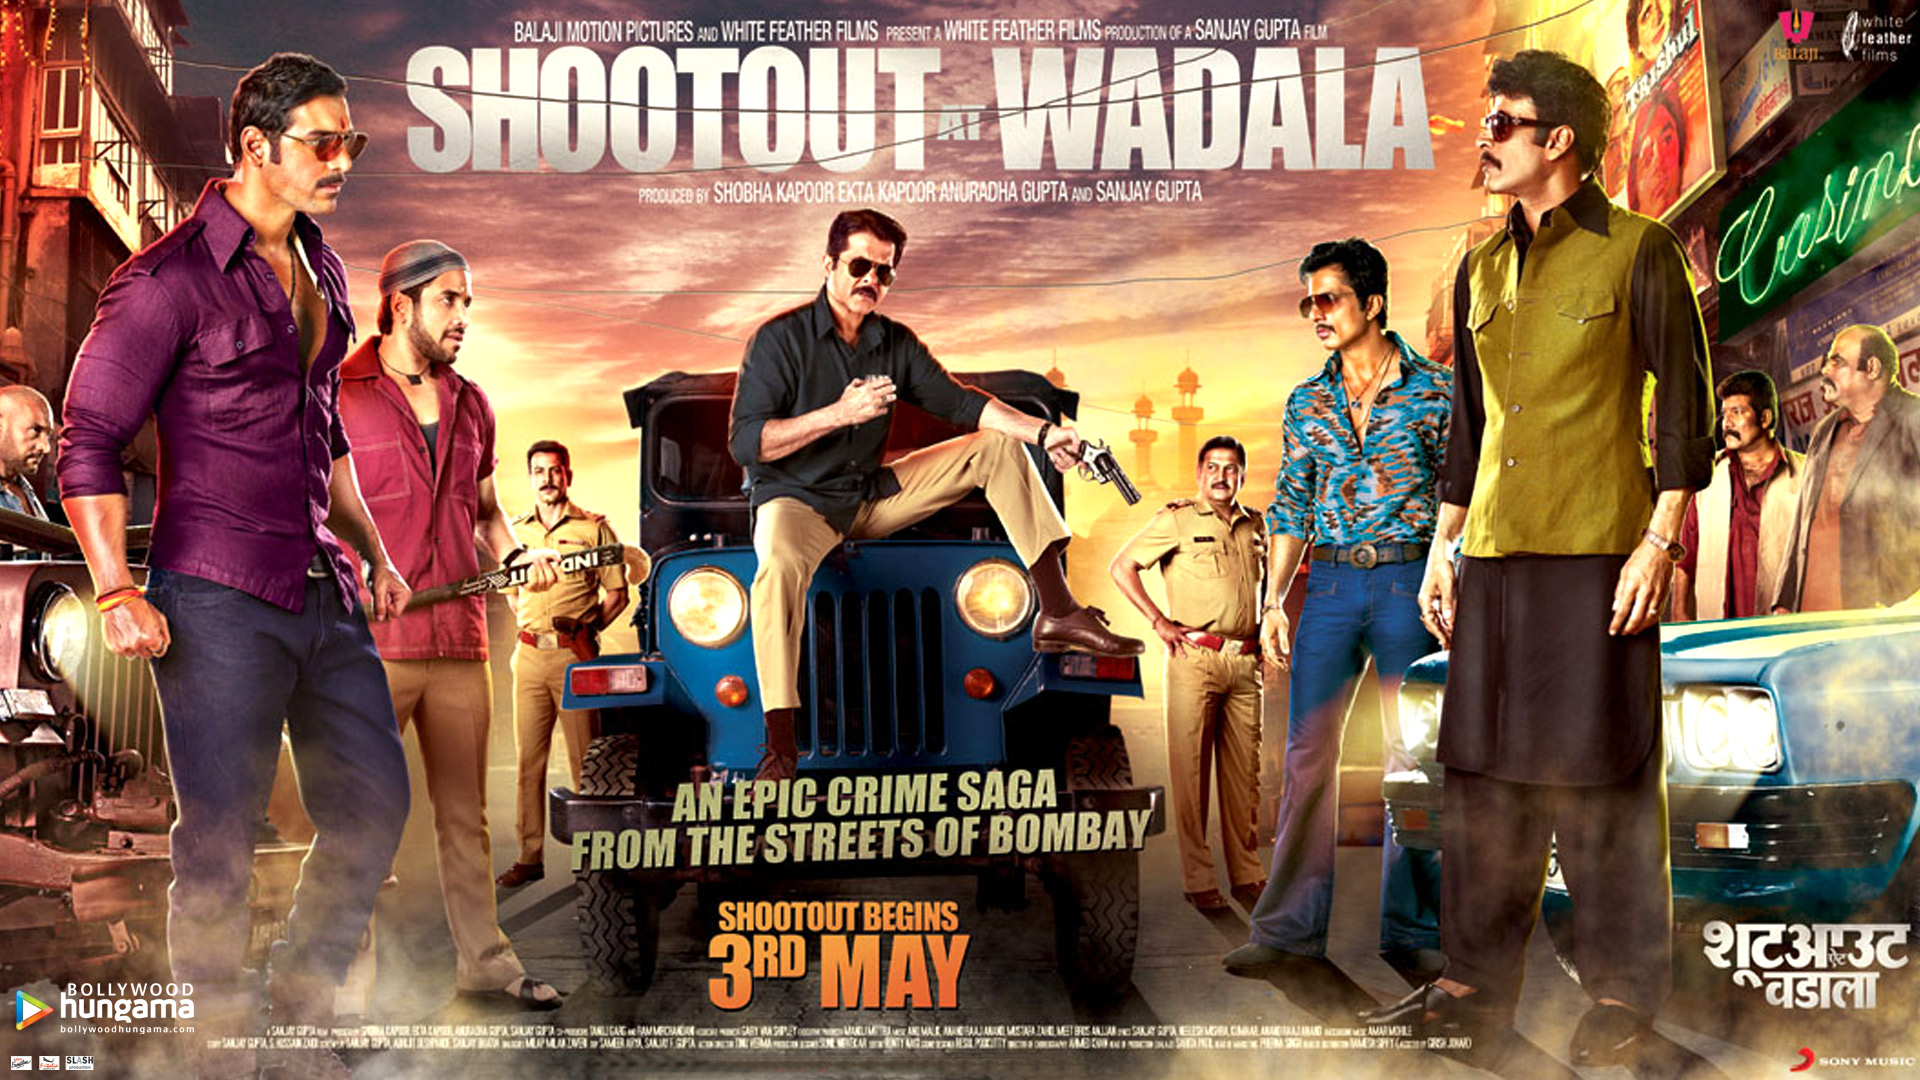 Shootout at wadala HD wallpapers | Pxfuel